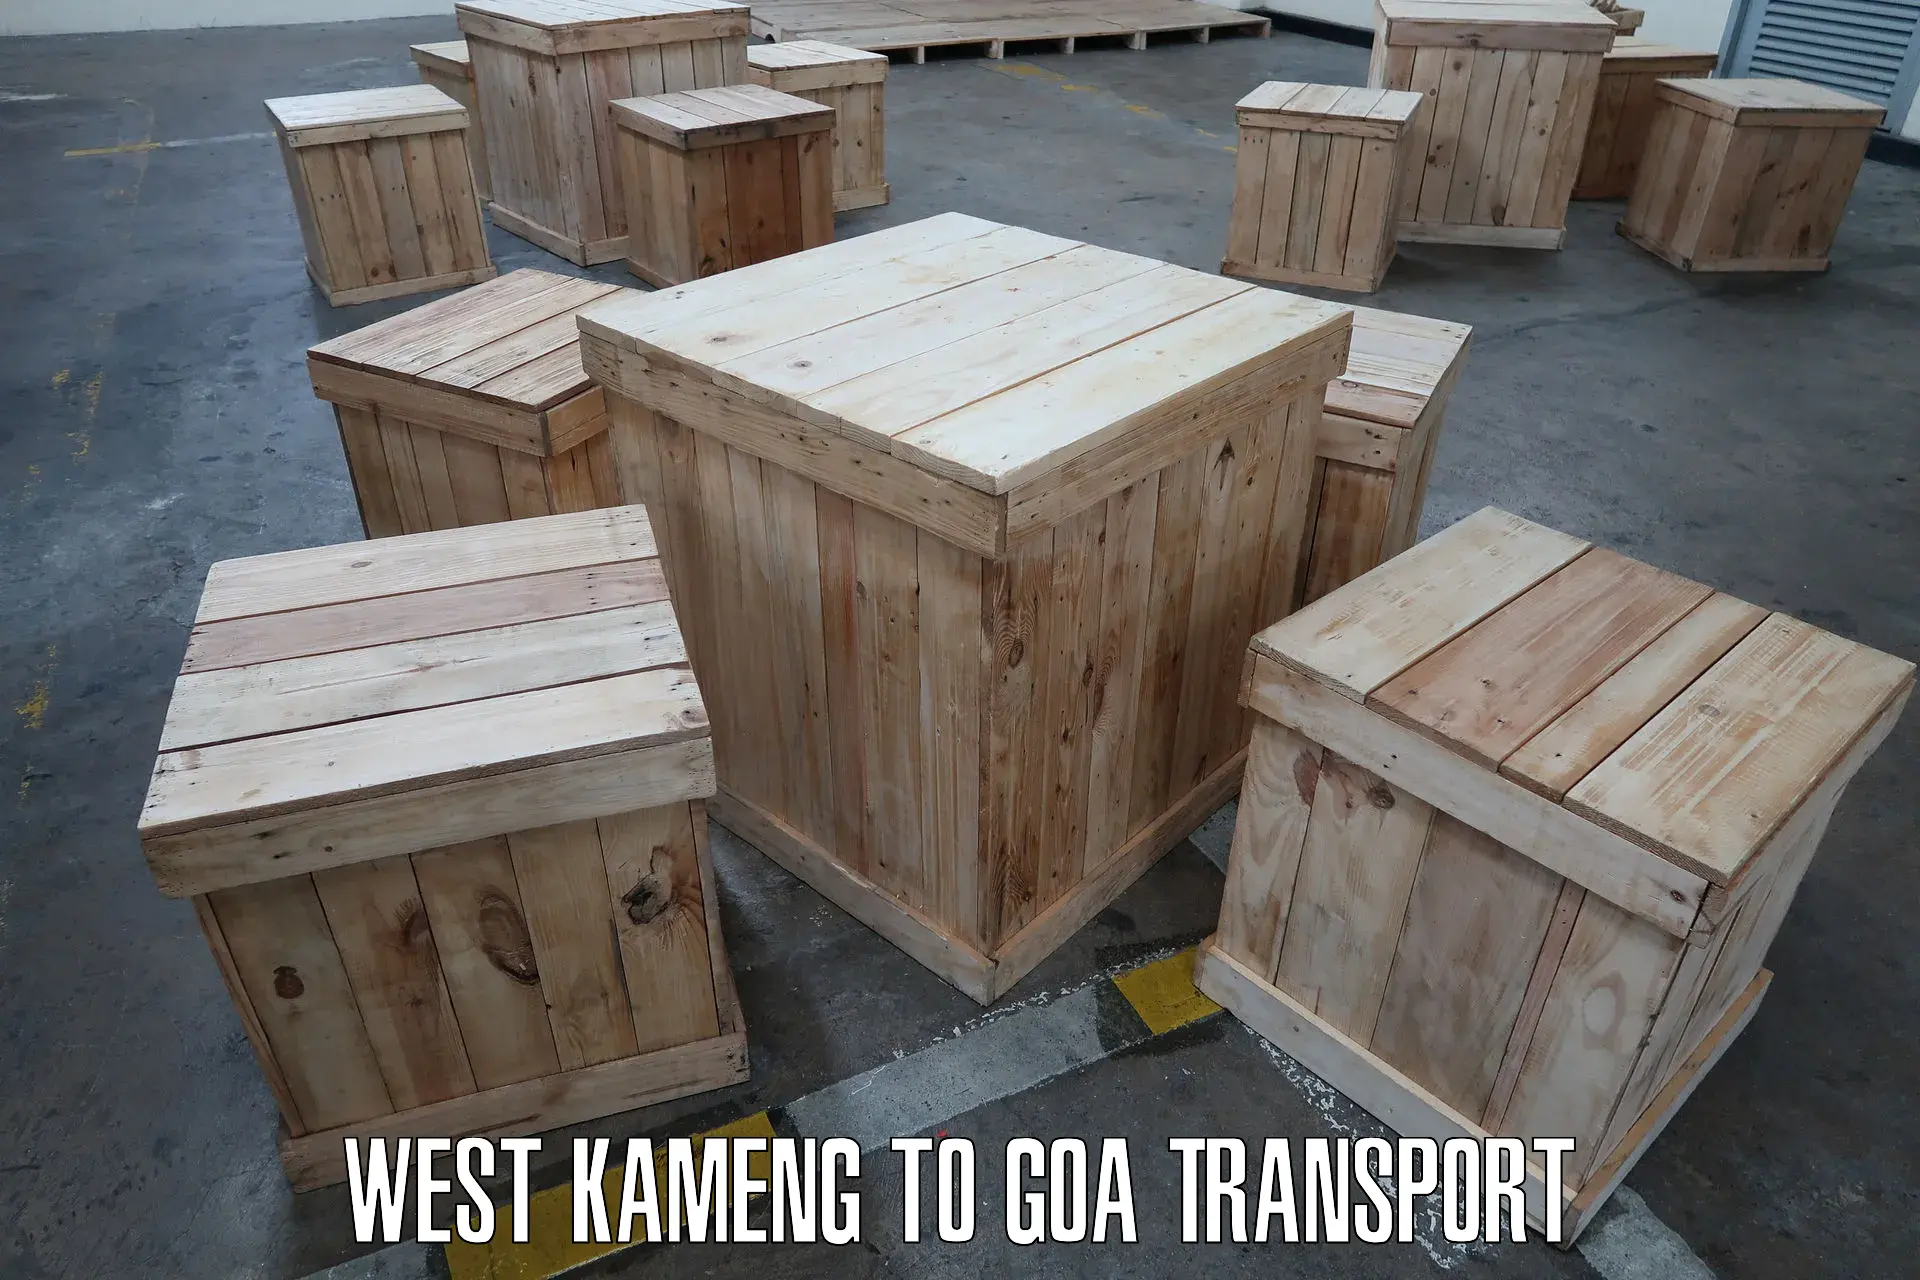 Road transport services West Kameng to Ponda